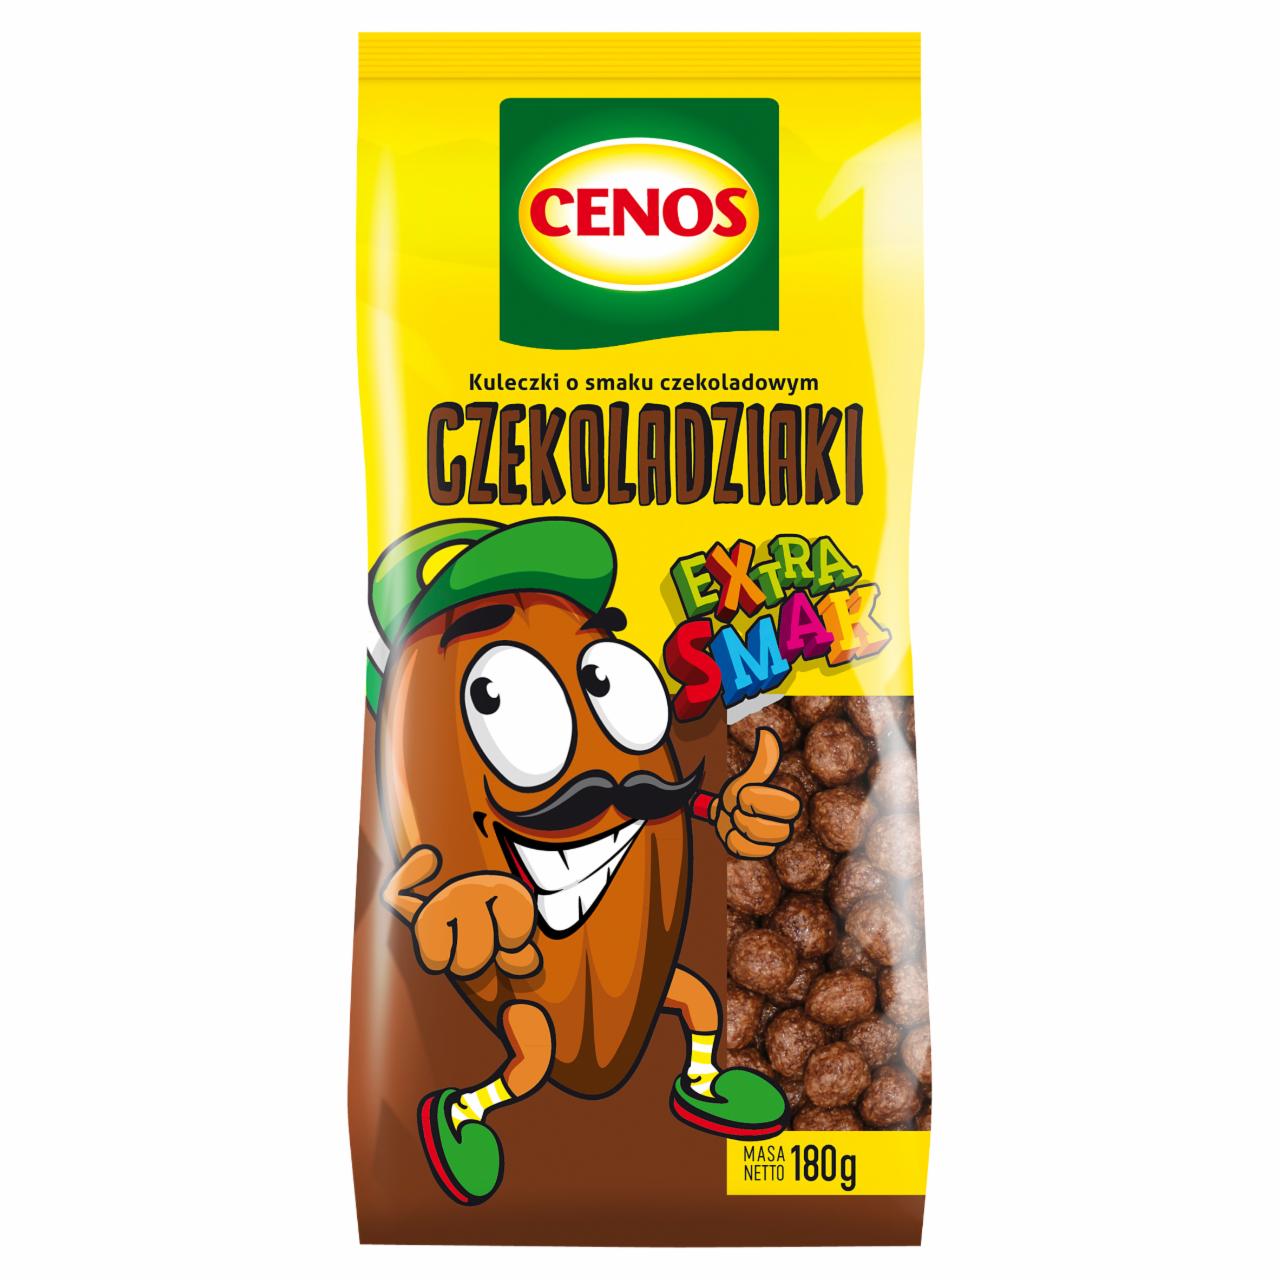 Zdjęcia - Cenos Czekoladziaki Kuleczki o smaku czekoladowym 180 g